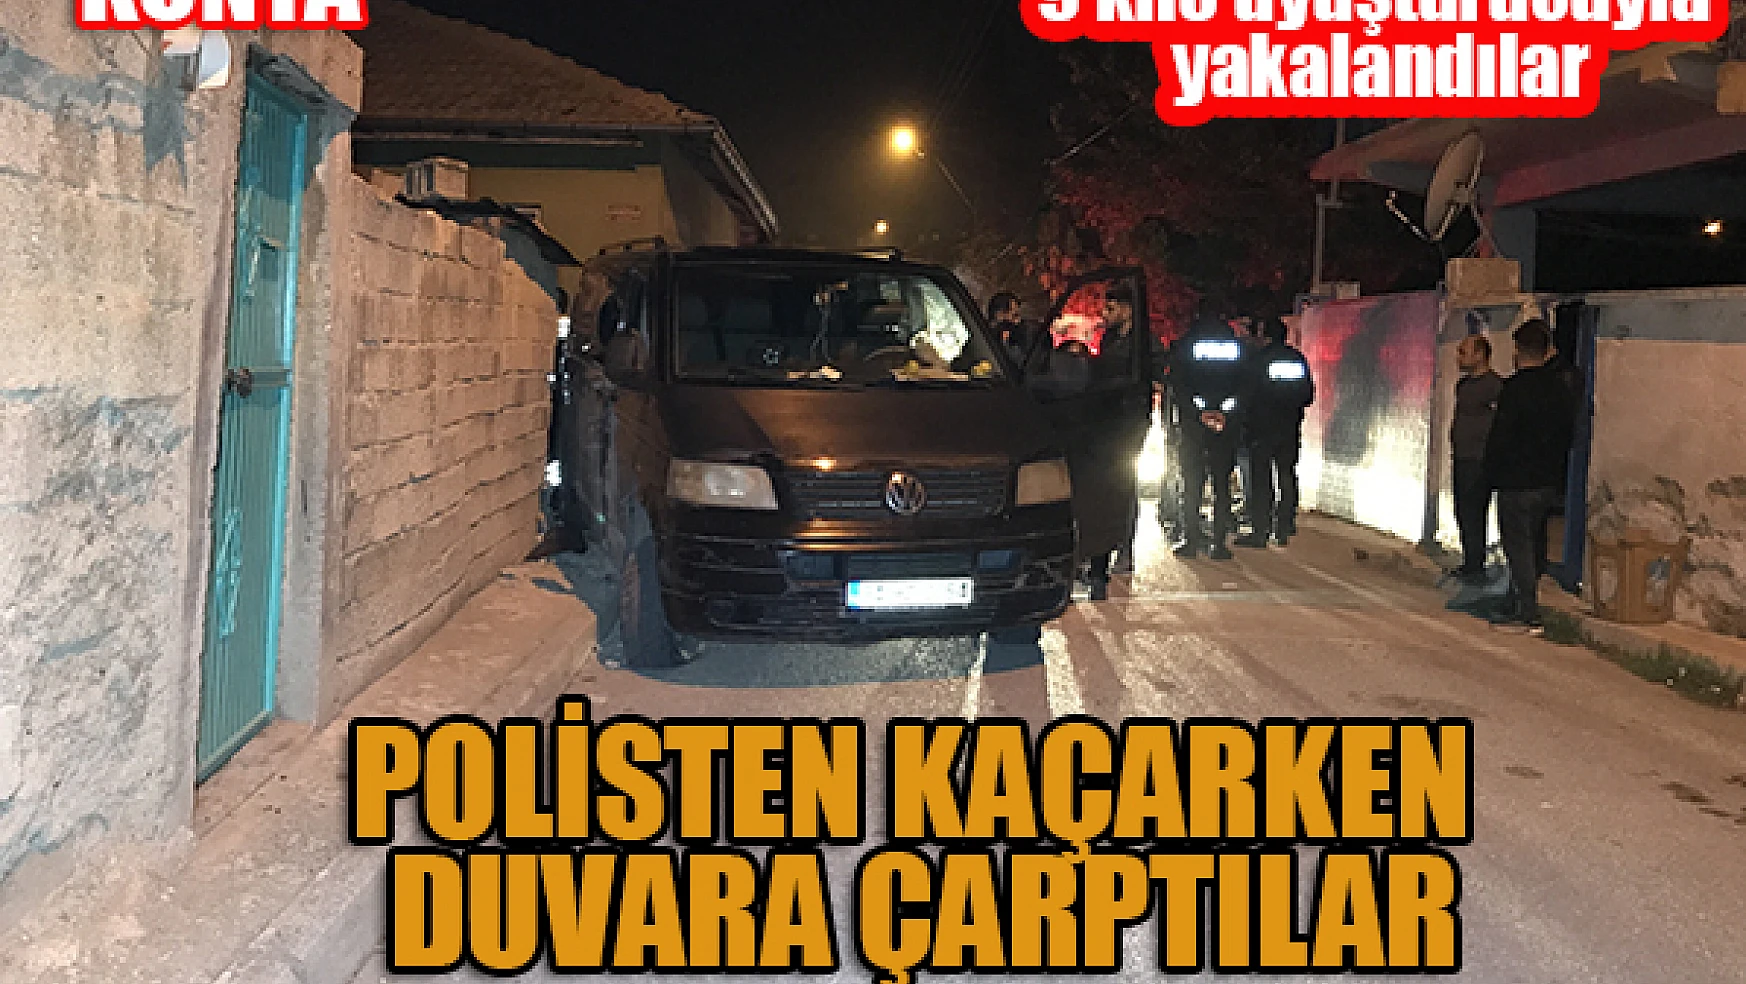 Konya'da polisten 30 dakika kaçtılar, 9 kilo uyuşturucuyla yakalandılar